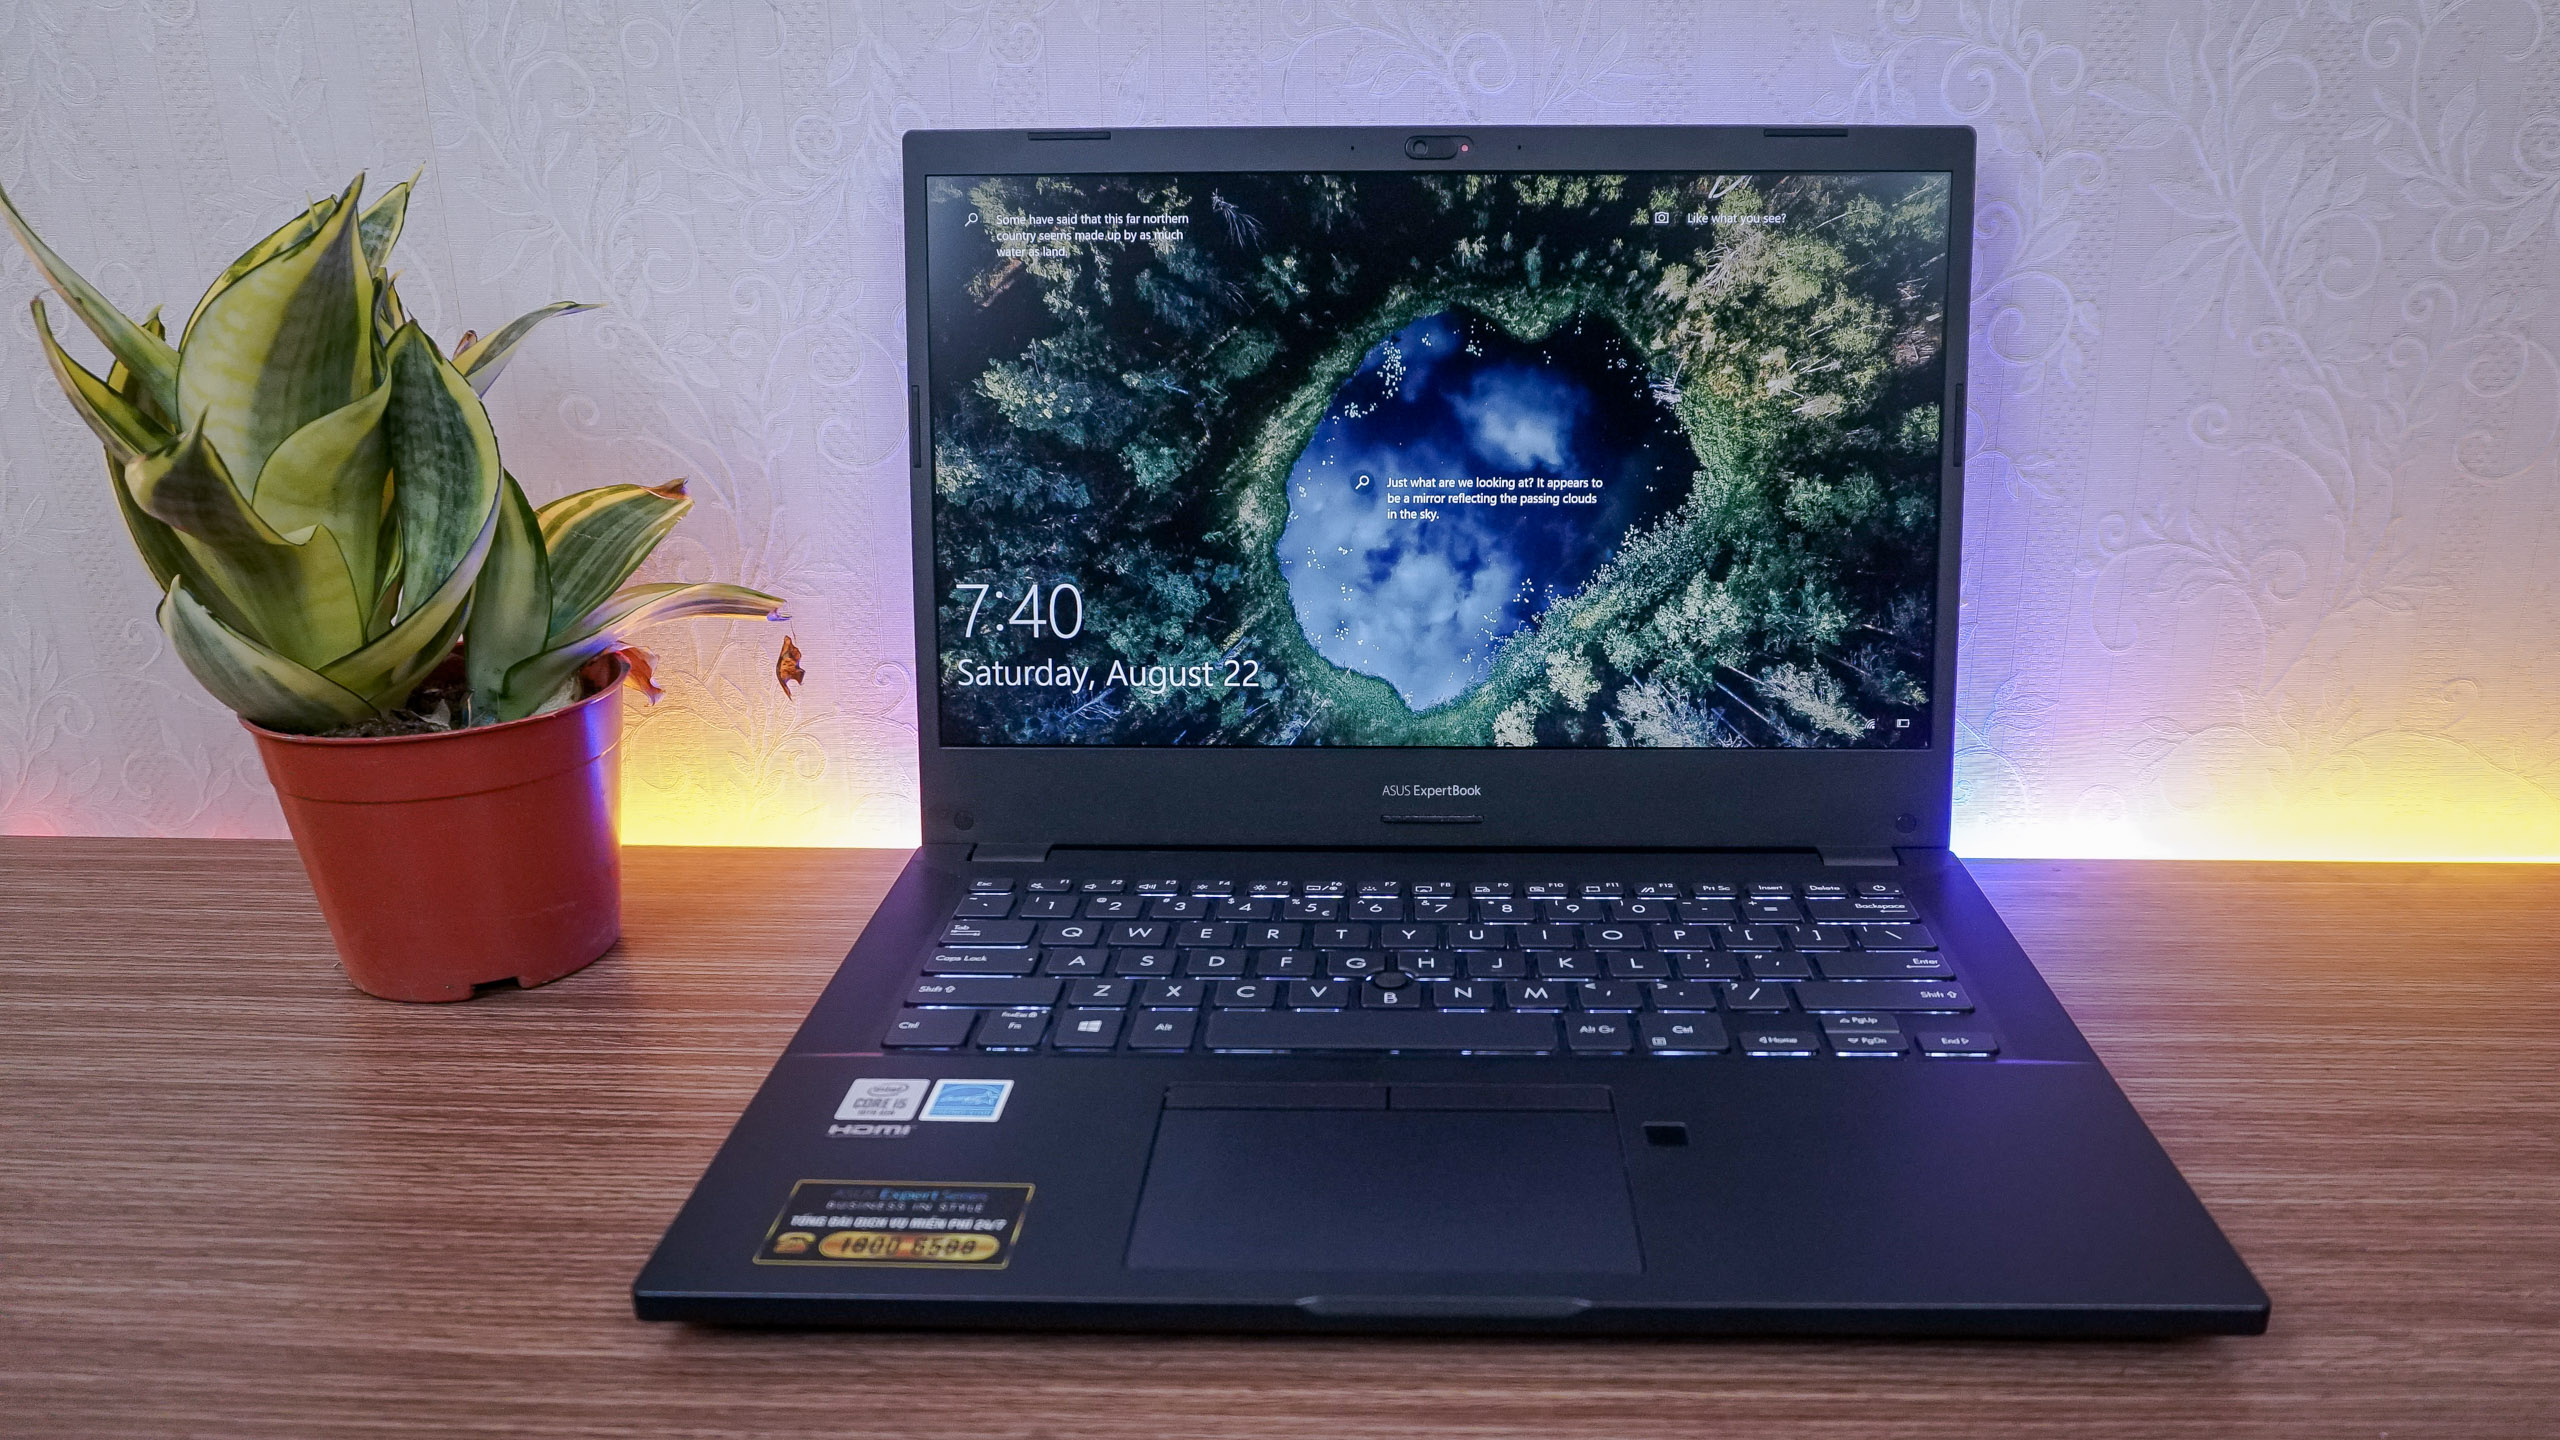 Trên tay ASUS ExpertBook P2, laptop doanh nghiệp, Intel Core thế hệ 10, đầy đủ cổng kết nối, độ bền chuẩn quân sự